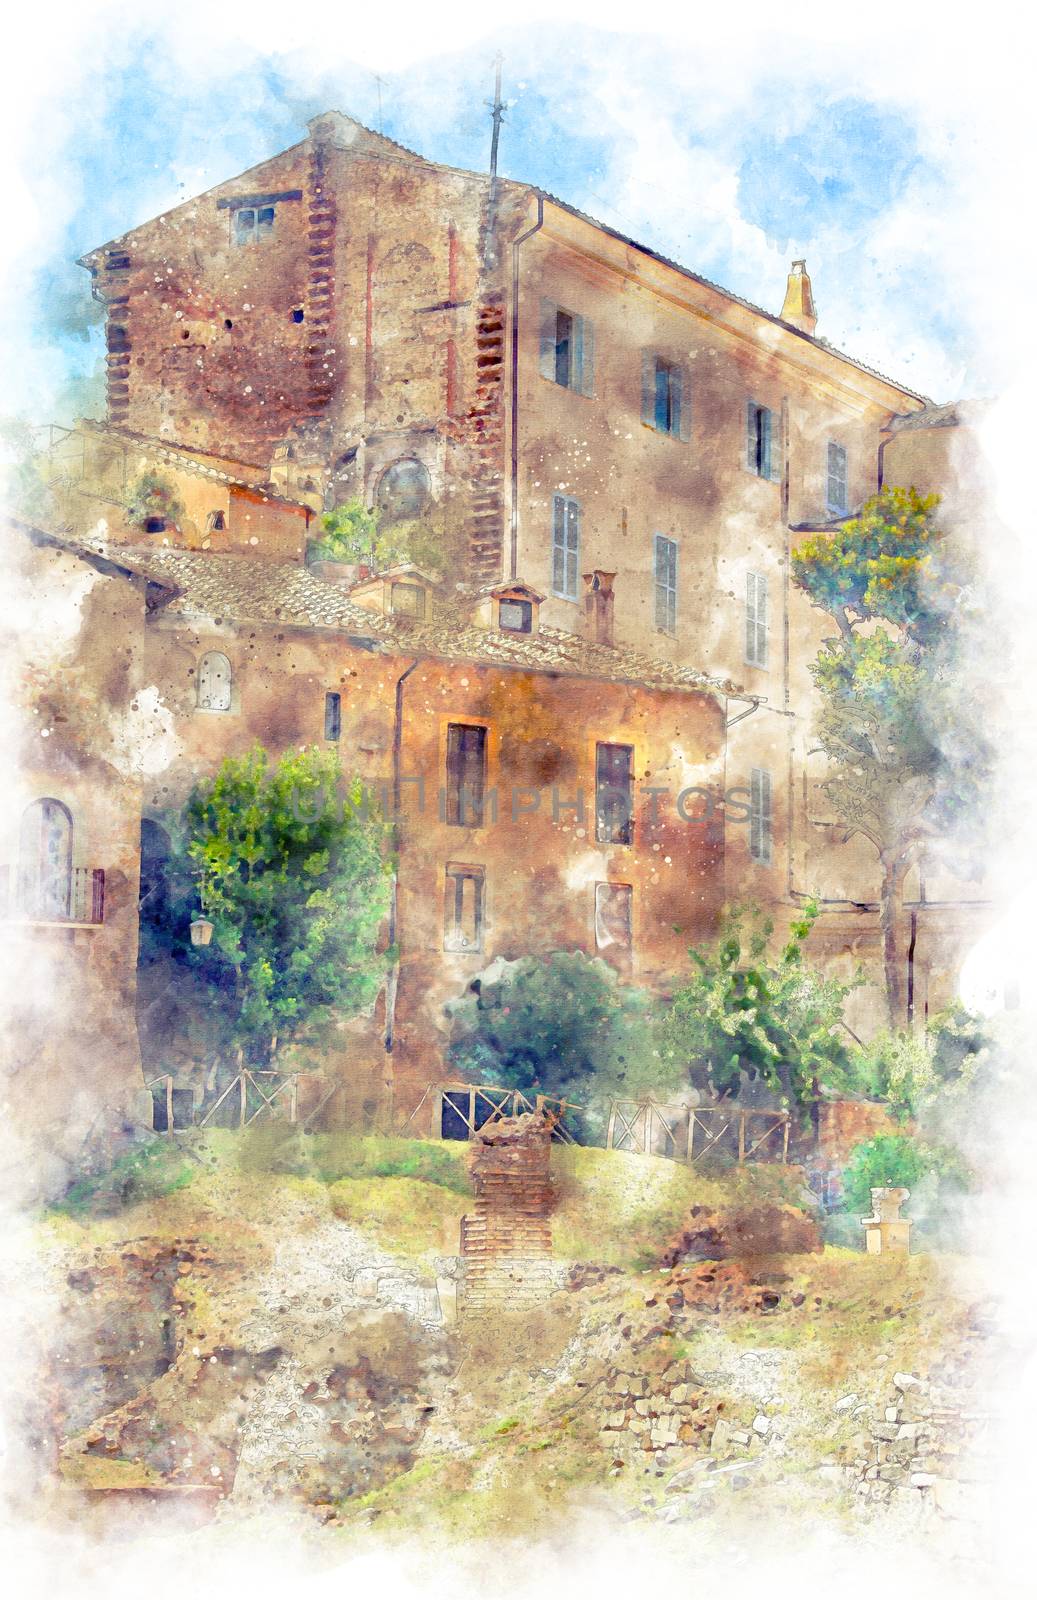 Digital illustration in watercolor style of Santa Rita da Cascia in Campitelli, view from Via del Foro Piscario, Rome, Italy